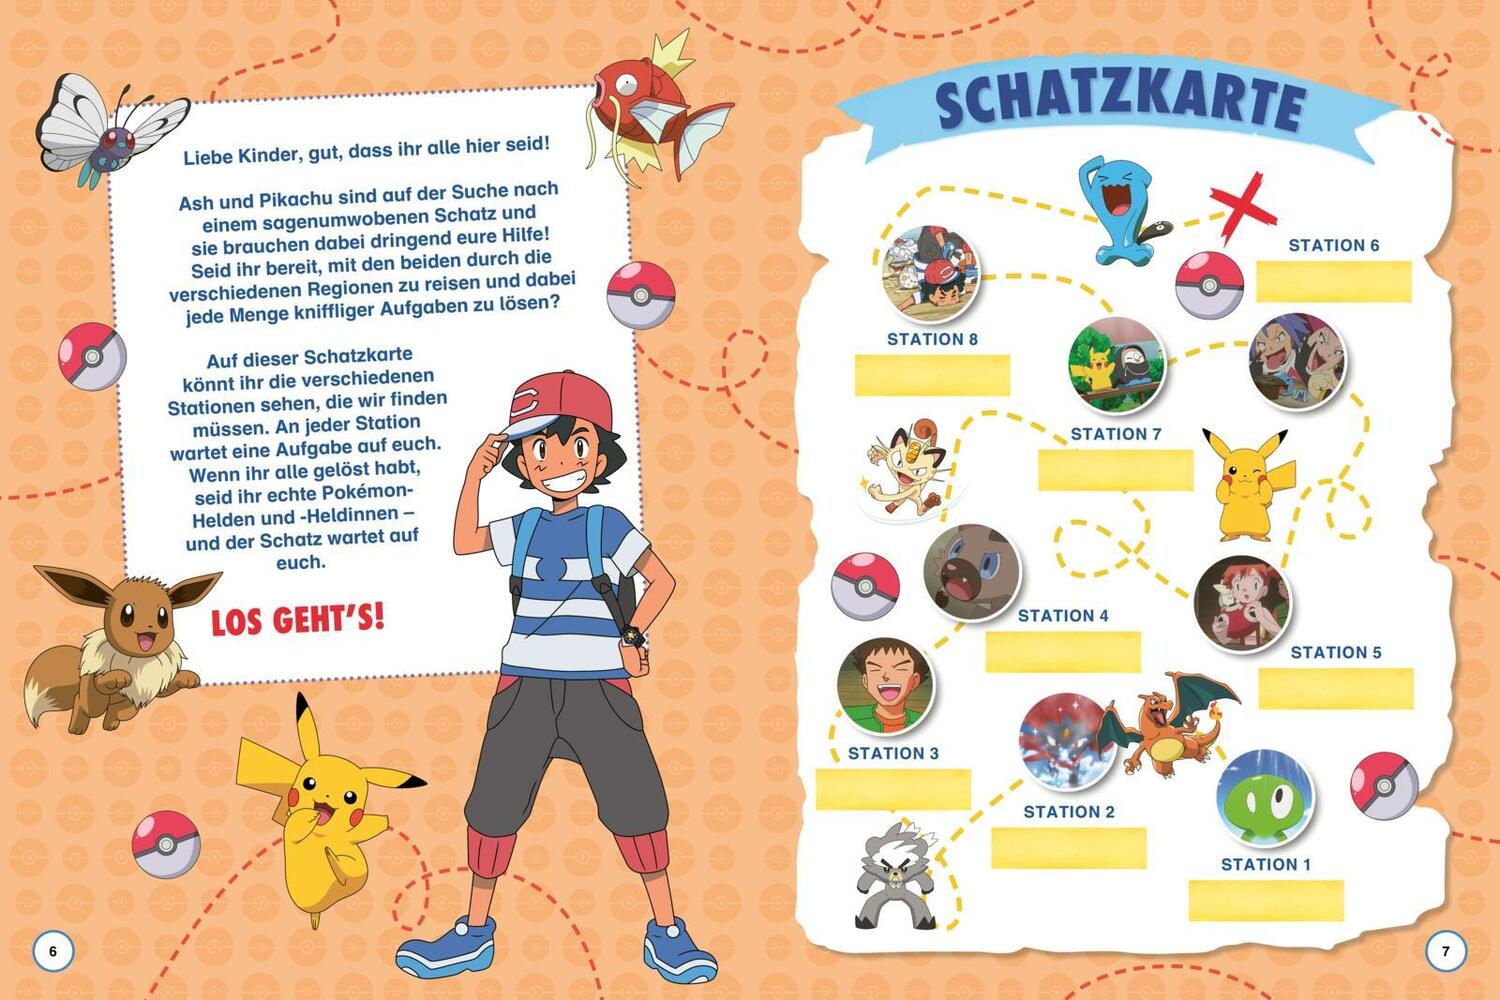 Bild: 9783845123301 | Pokémon Activity-Buch: Meine Schnitzeljagd | Taschenbuch | Pokémon